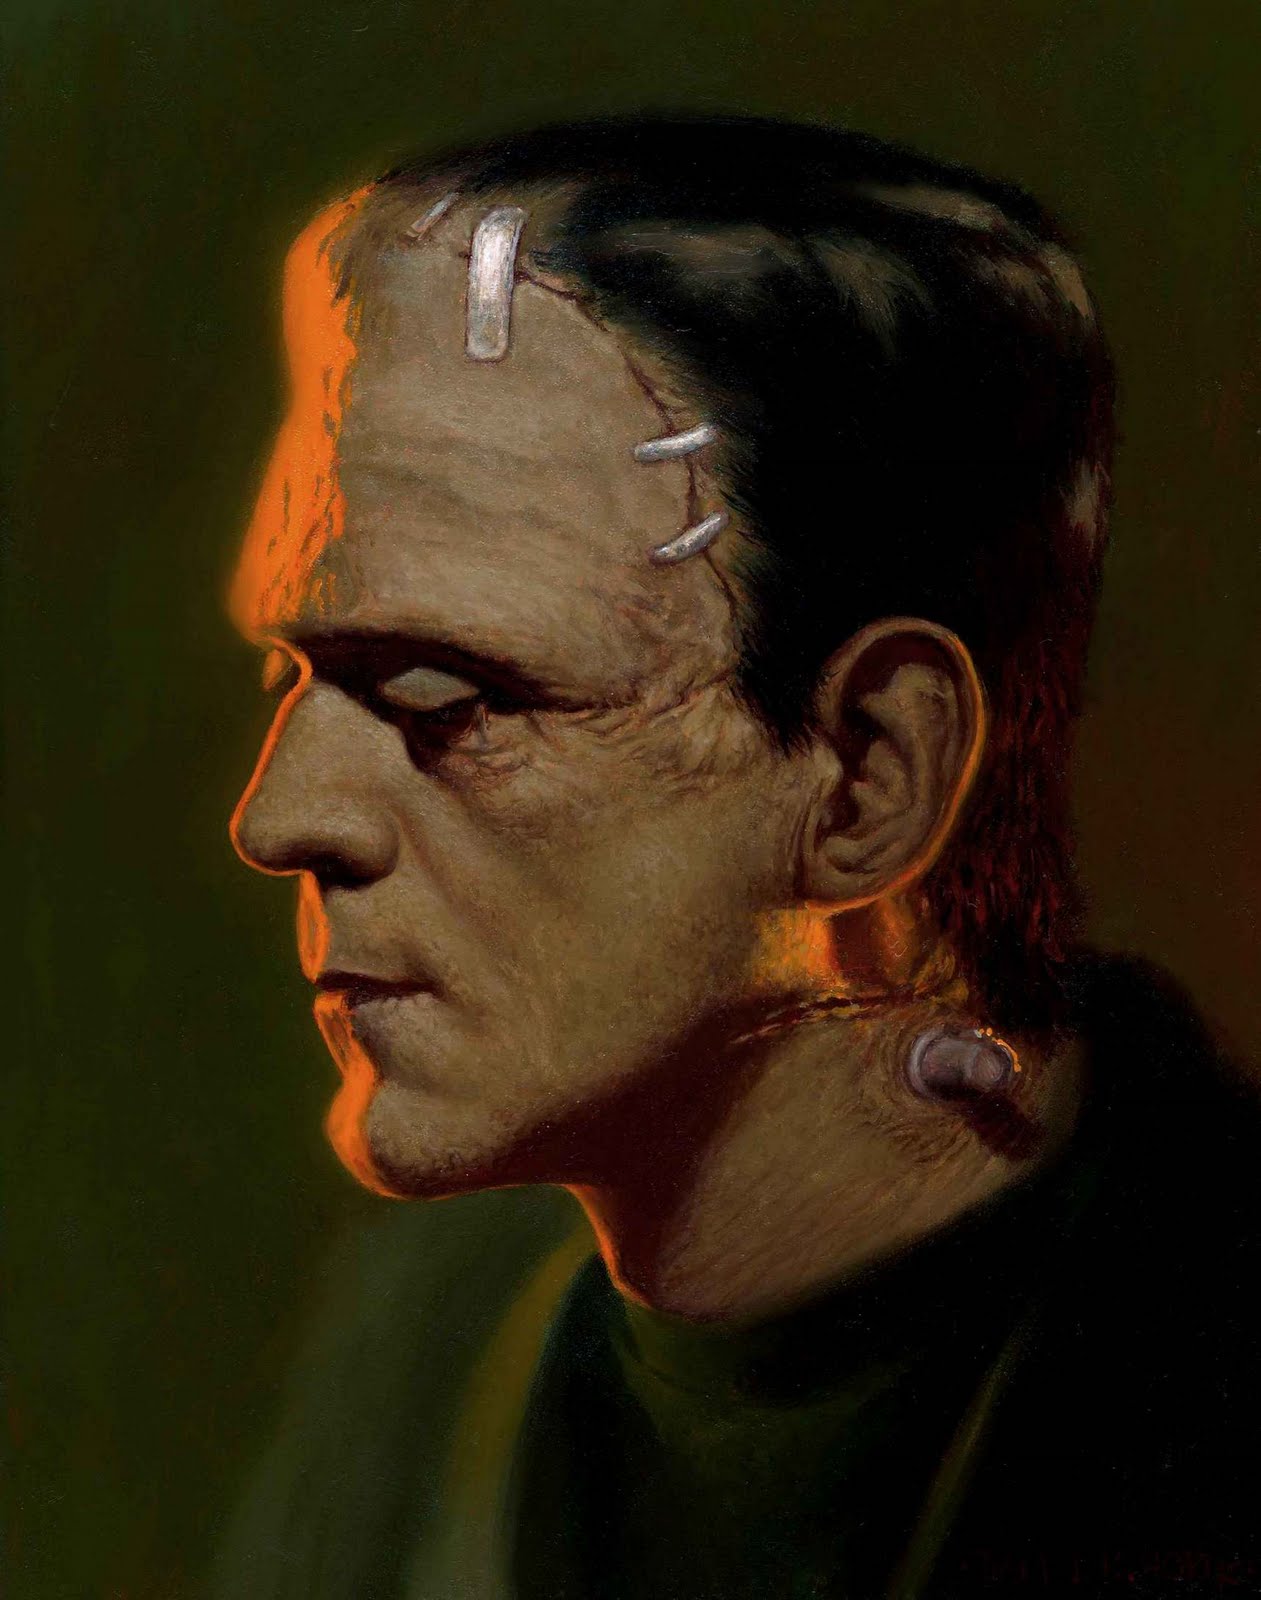 Frankenstein: The Monster of Society